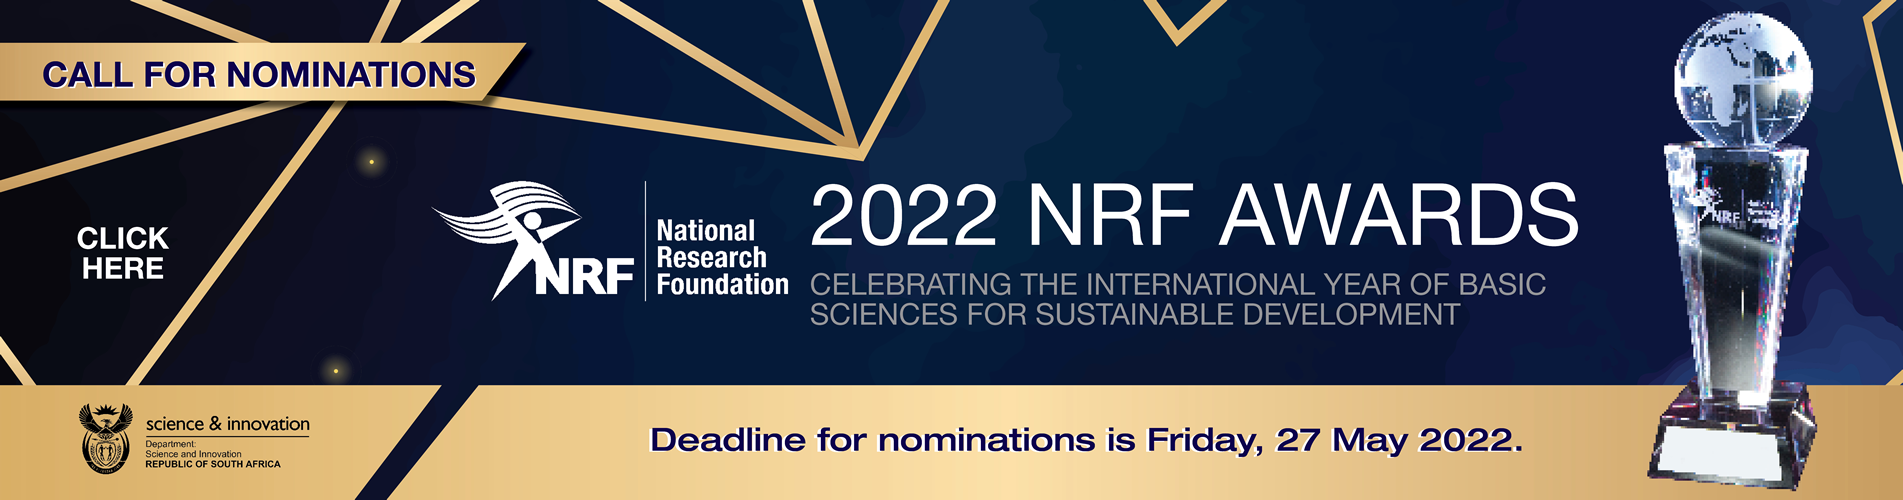 NRF Awards 2022